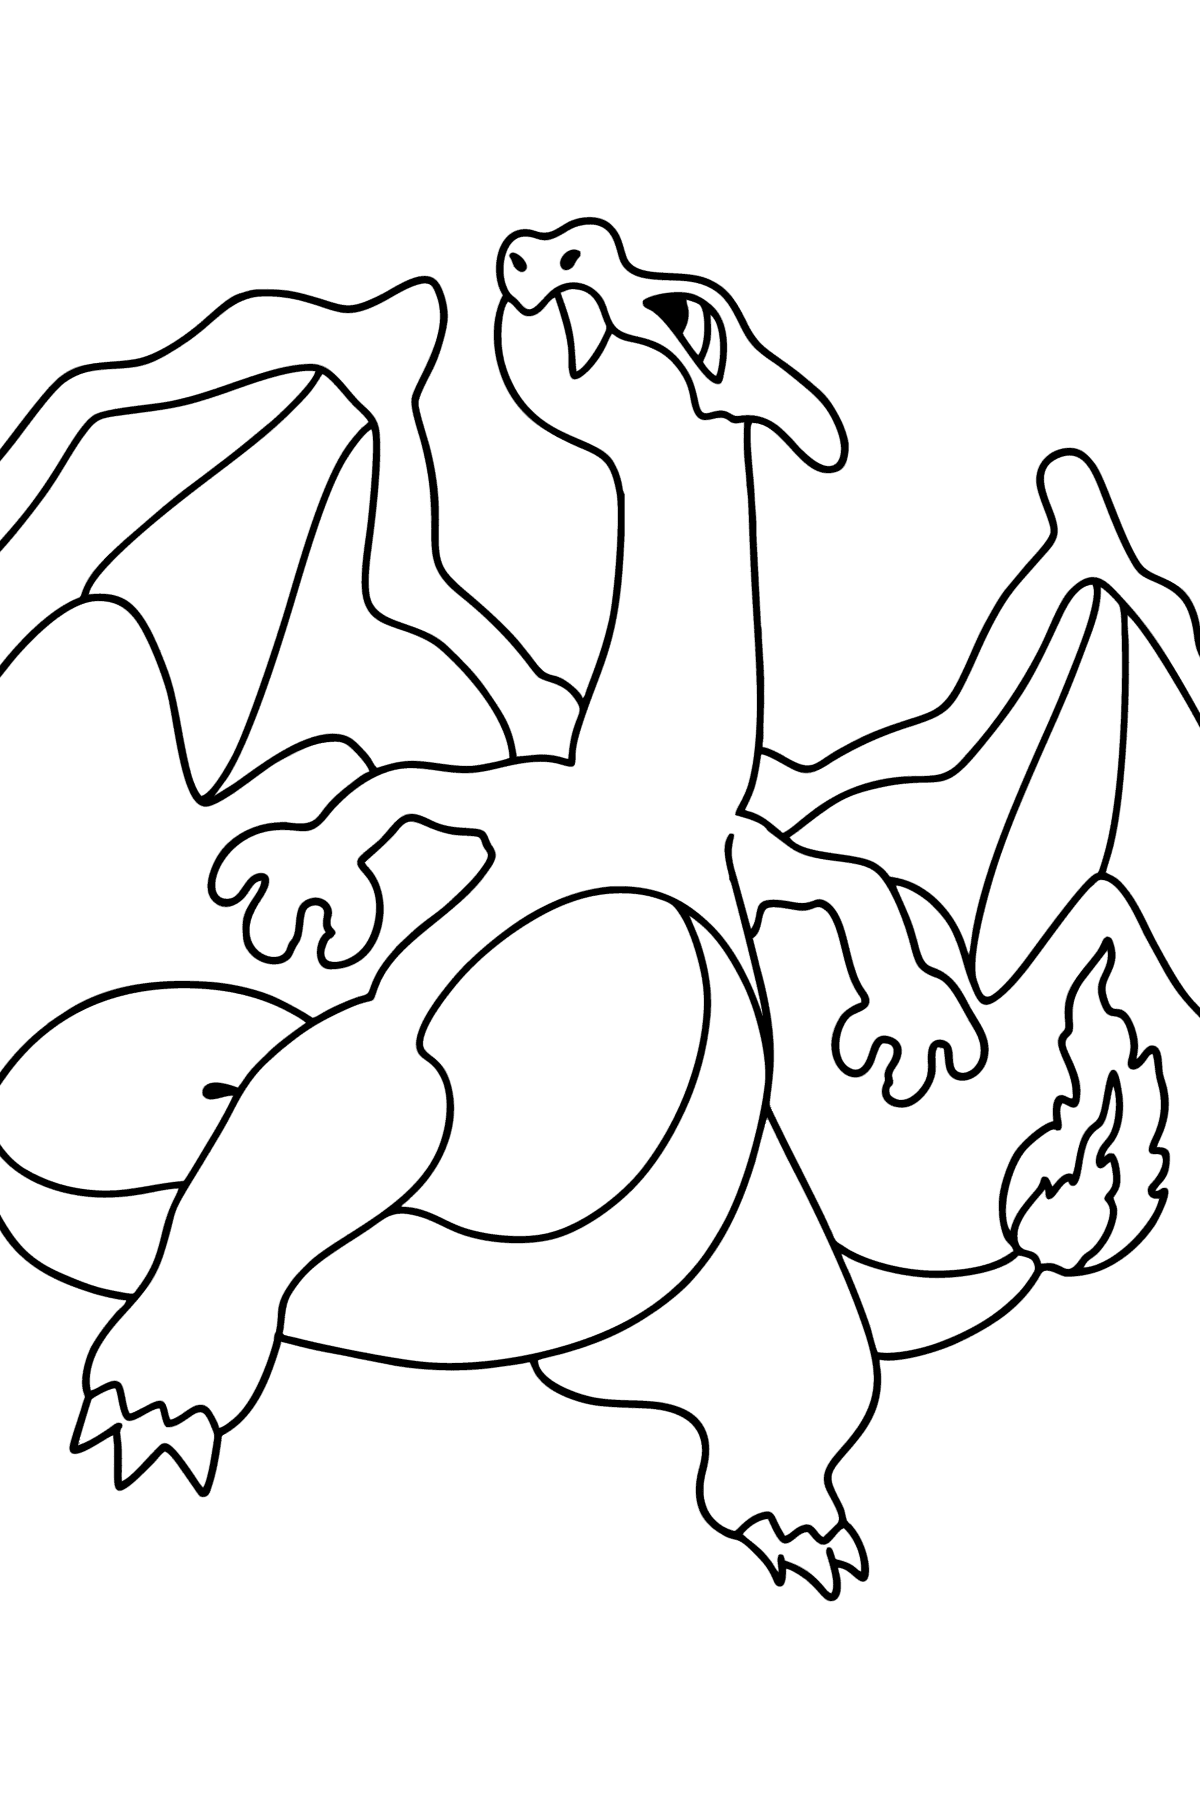 Розмальовка Pokemon Go Charizard - Розмальовки для дітей